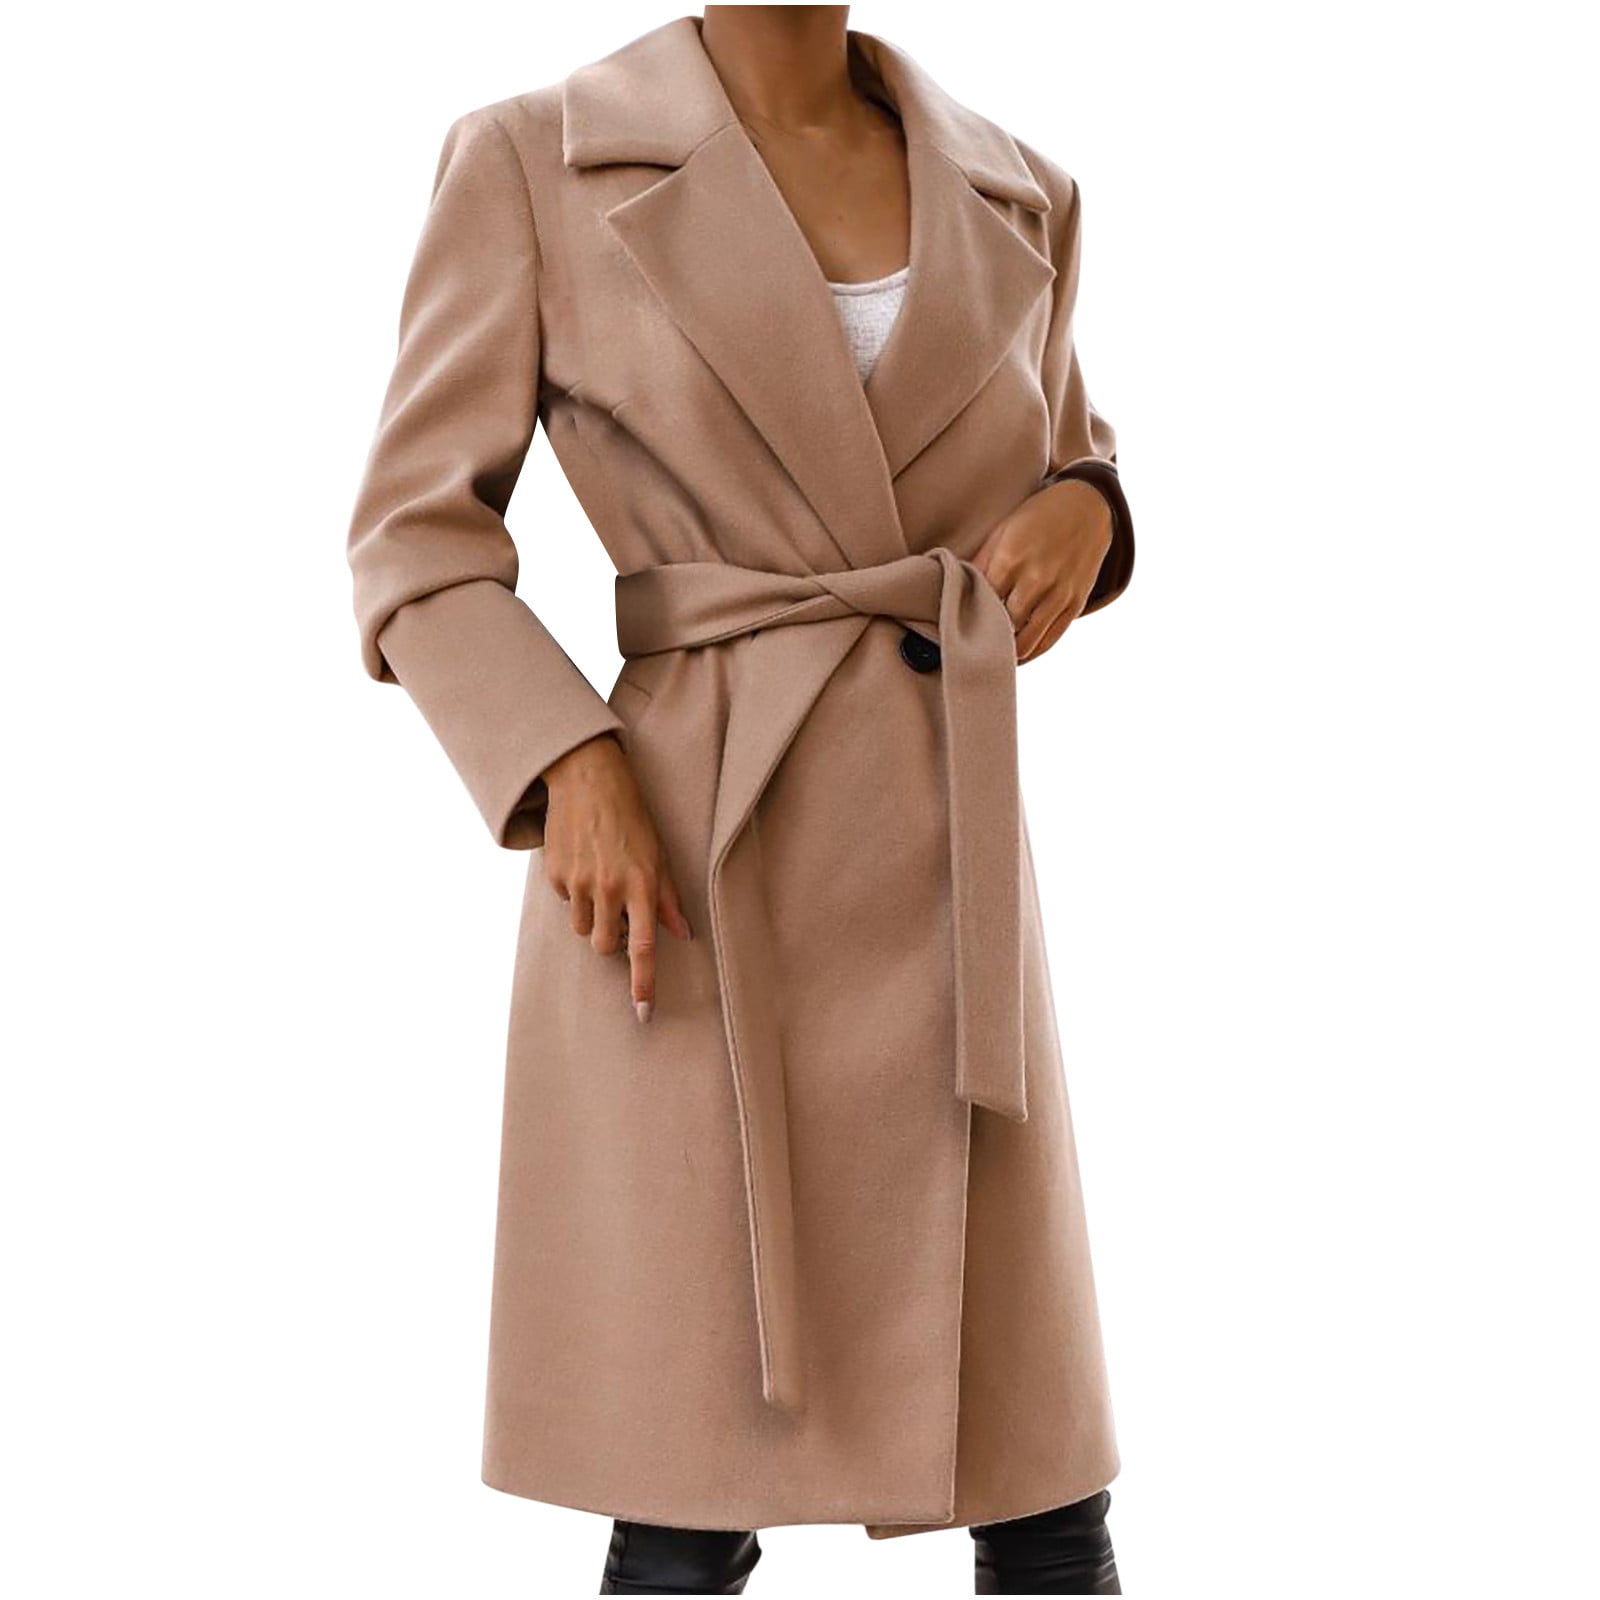 jsaierl Women Trench Coat Long Sleeve Pea Coat Open Front One Button Wool  Blend Solid Long Jacket Overcoat Outwear